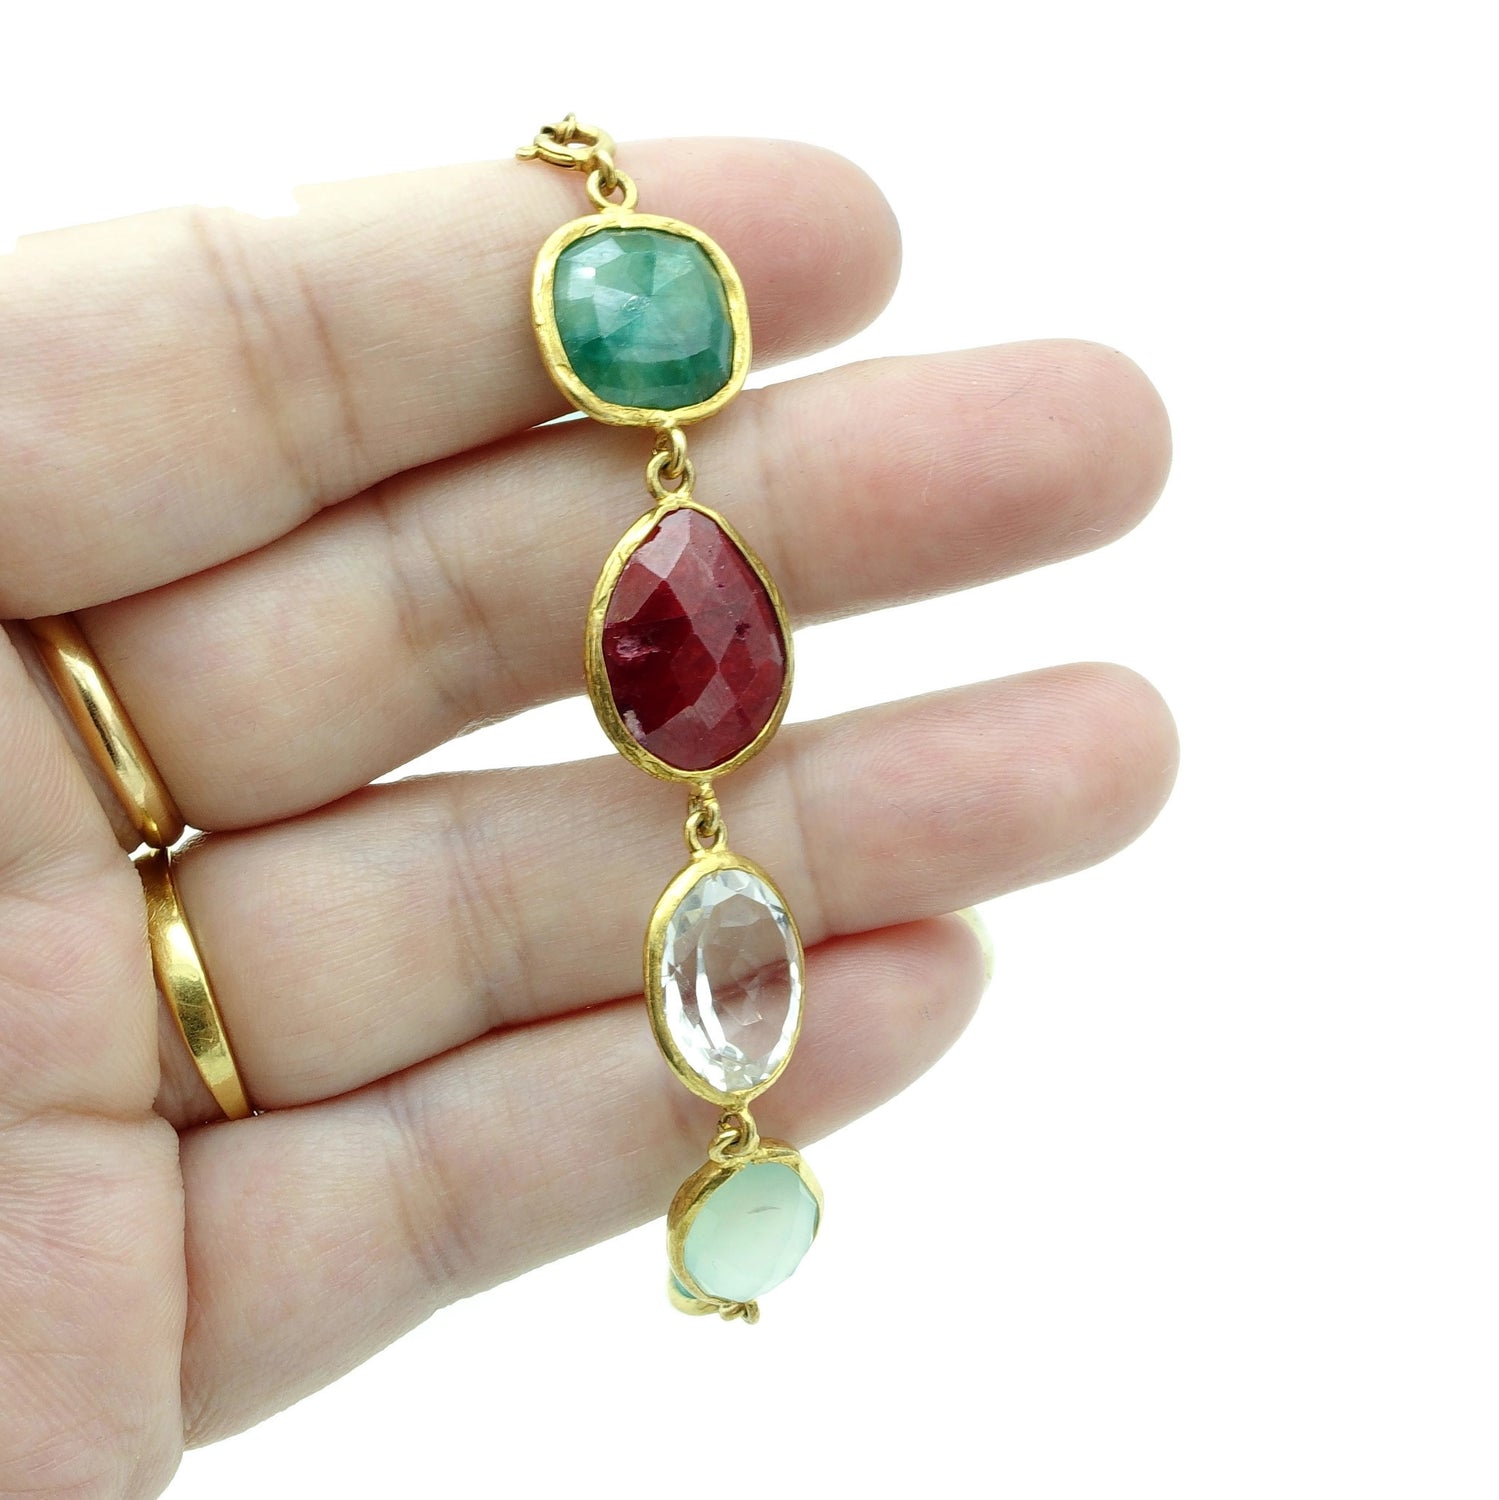 22ct gold plated Bracelet in Aquamarine Ruby Amethyst Multi semi precious gemstones